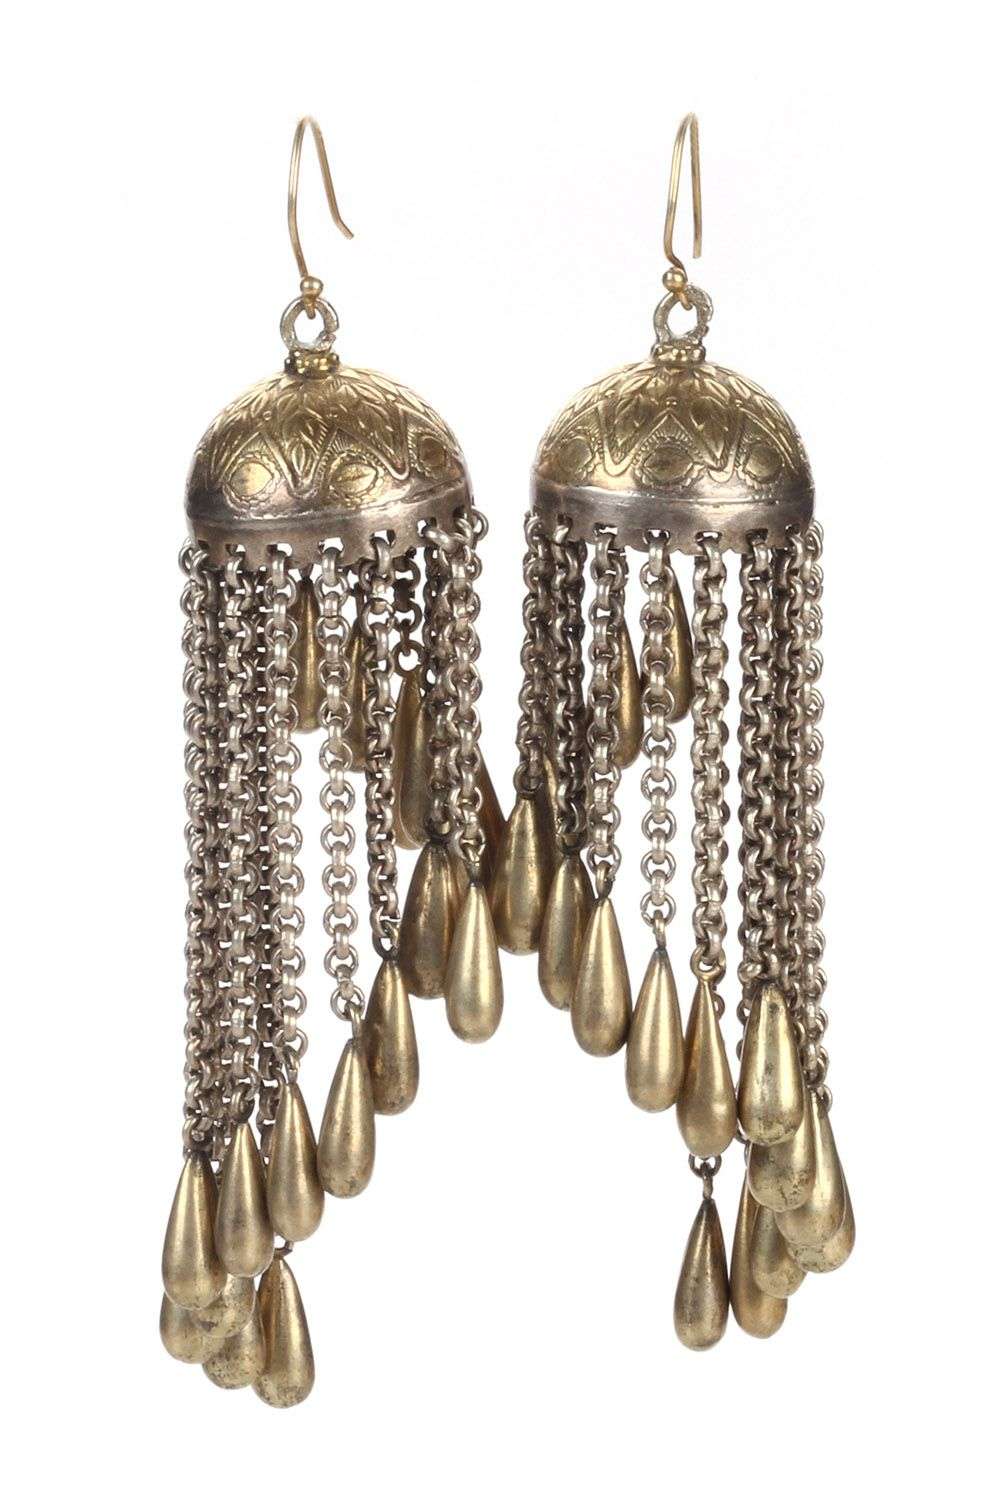 Large Love Heart 925 Sterling Silver Chandelier Earrings in a Gift Box |  eBay